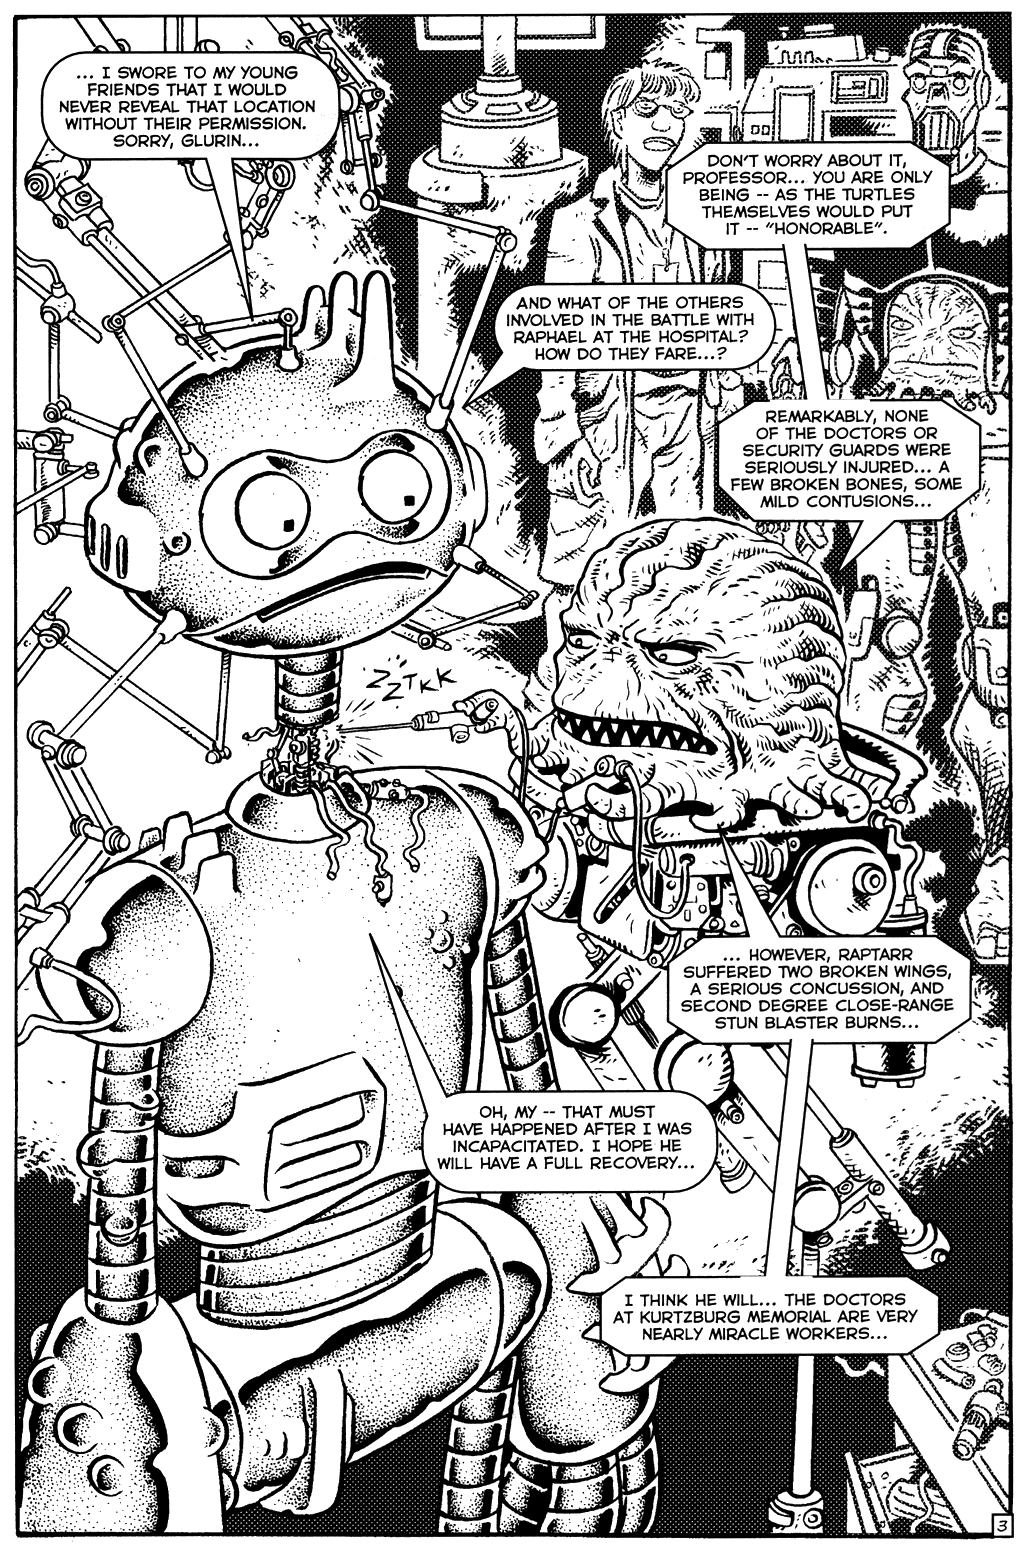 TMNT: Teenage Mutant Ninja Turtles issue 18 - Page 5